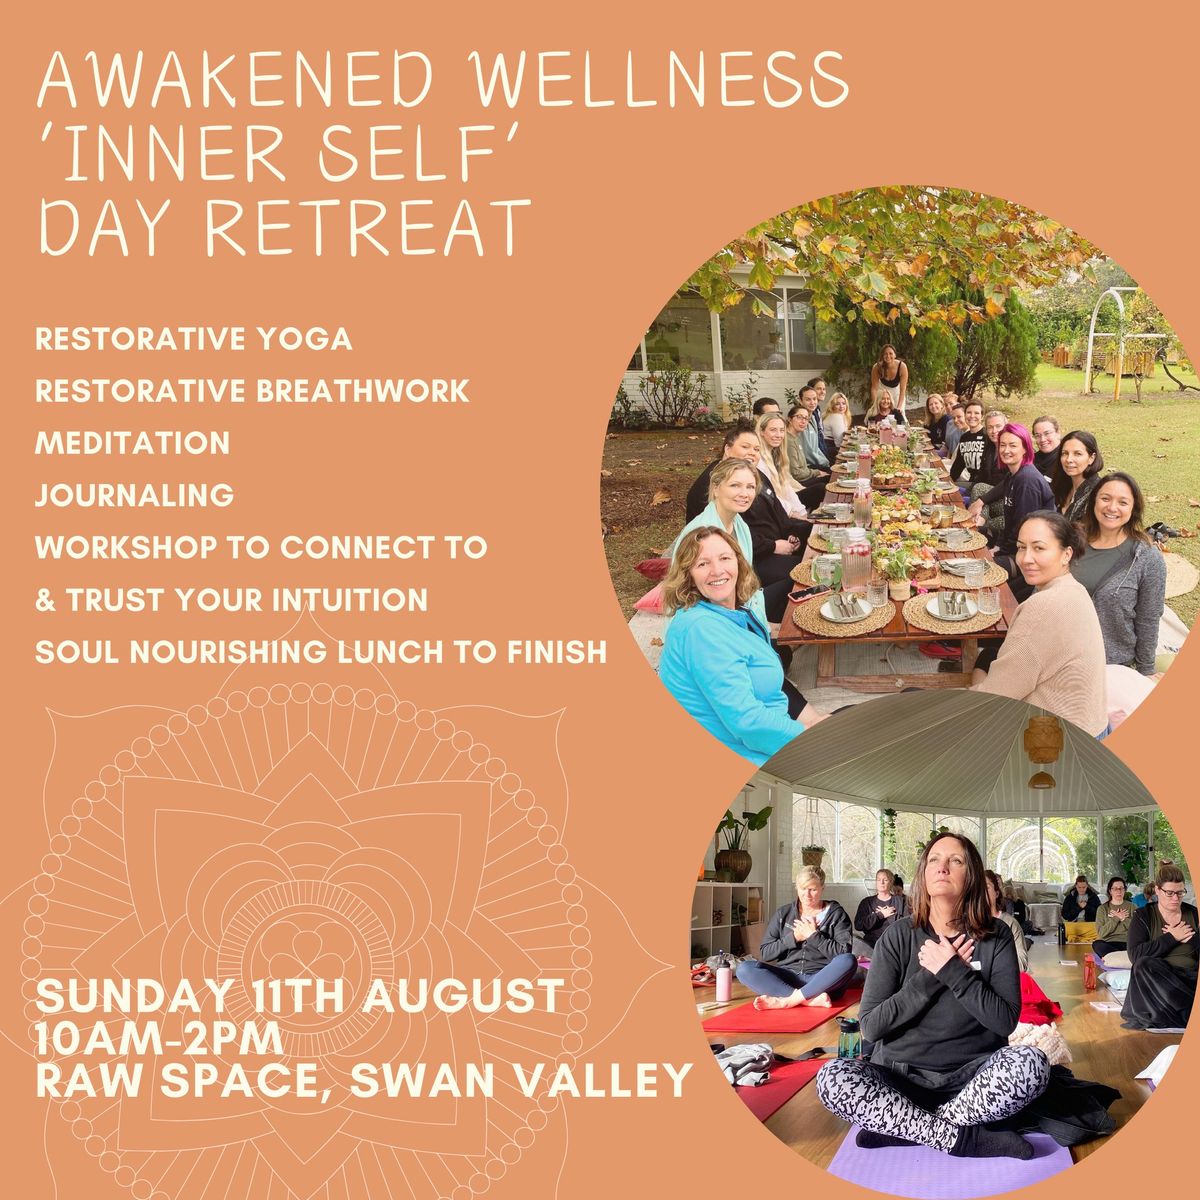 Awakened Wellness "Inner Self" Day Retreat 